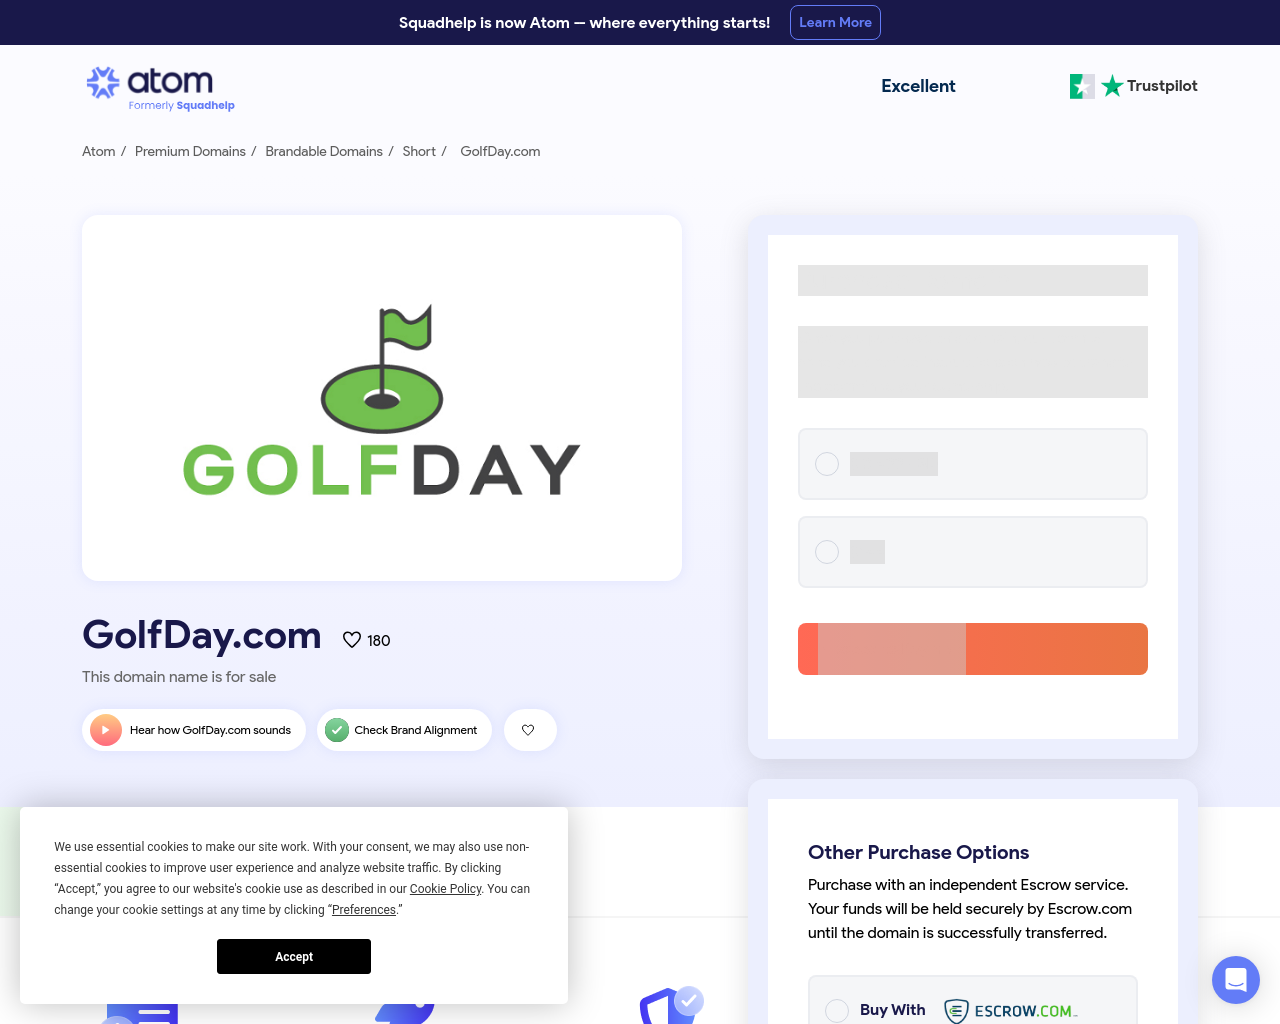 golfday.com